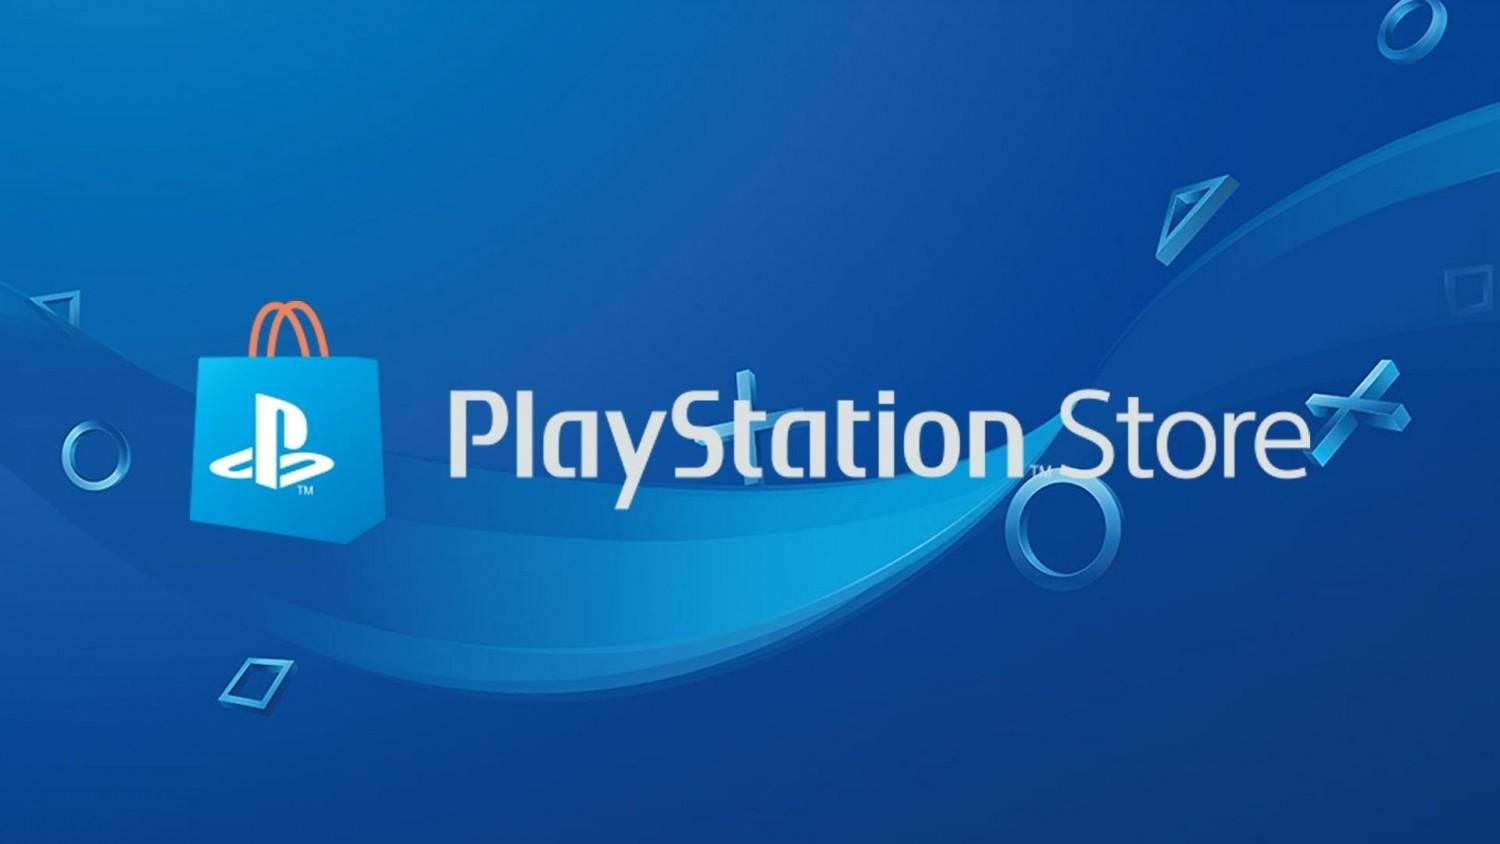 Распродажа в PlayStation Store: список игр со скидками до 95%